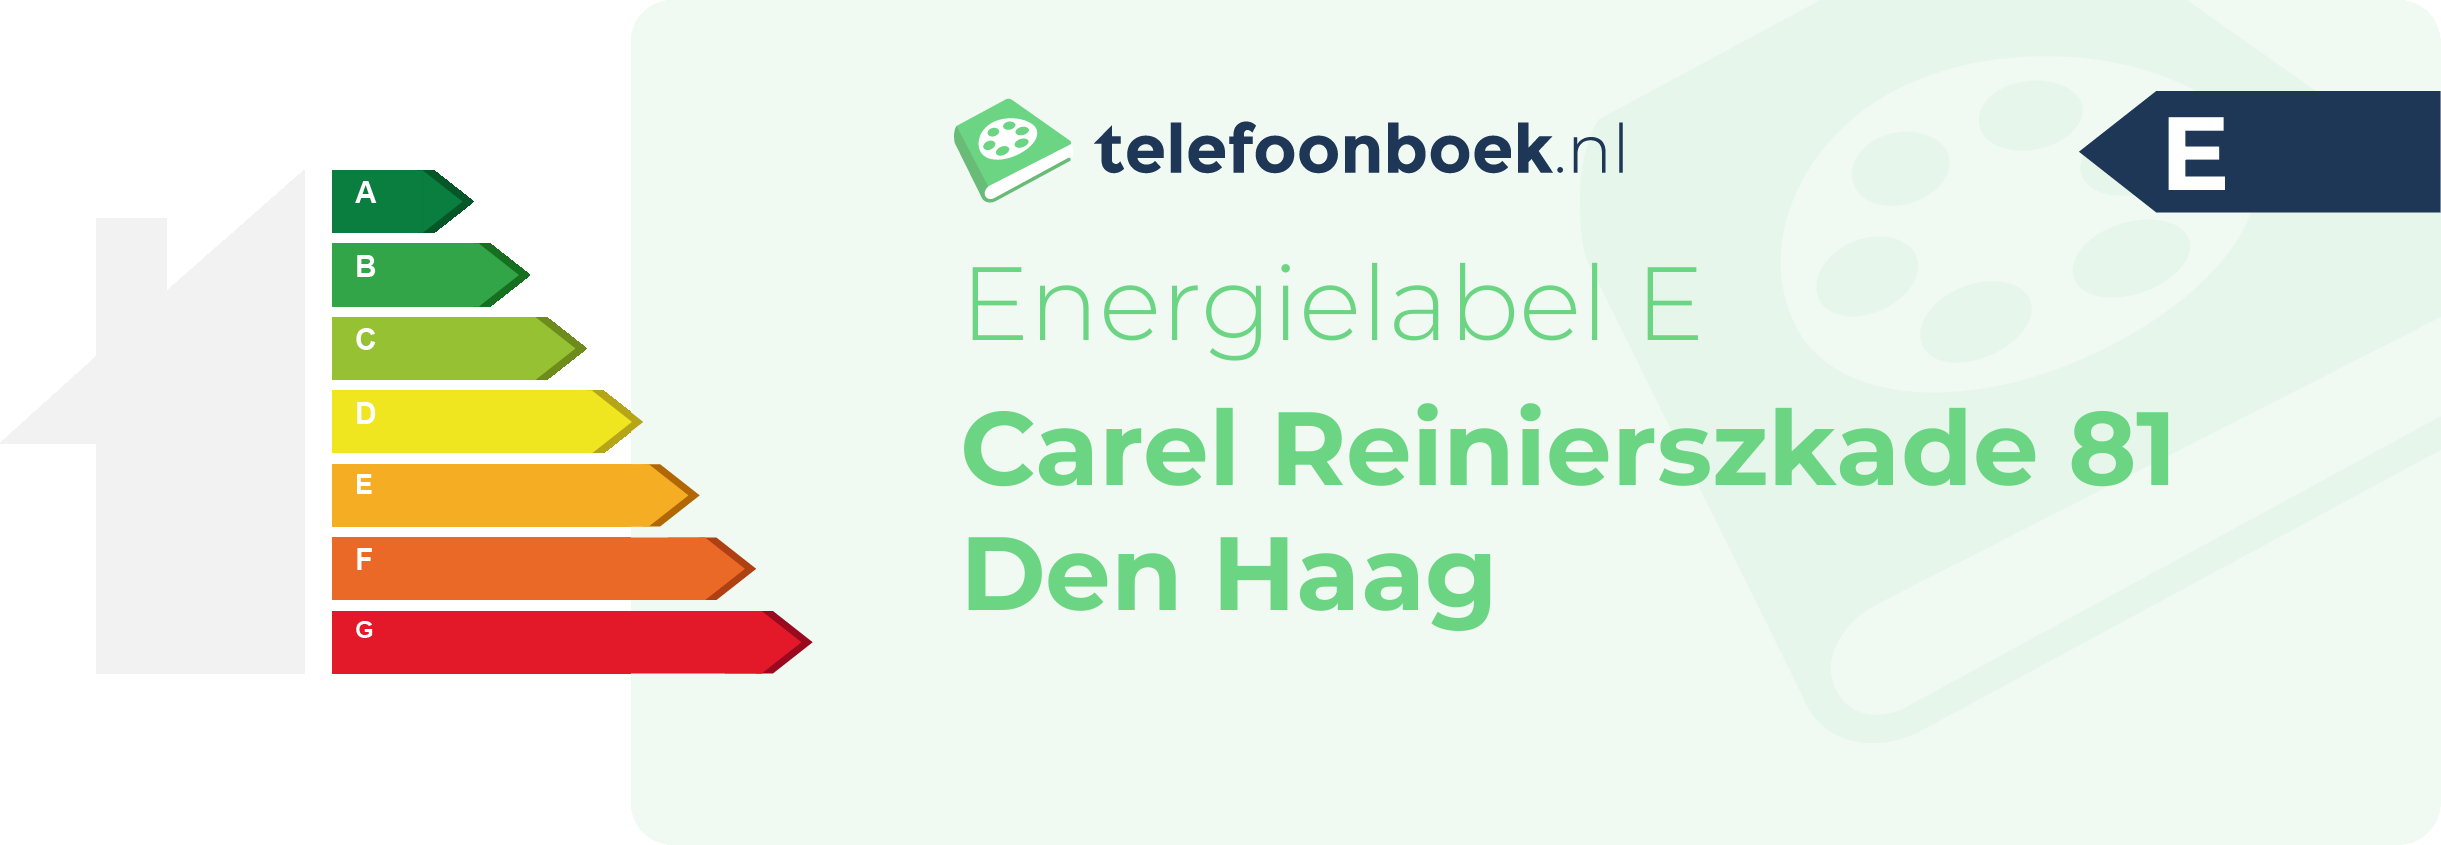 Energielabel Carel Reinierszkade 81 Den Haag